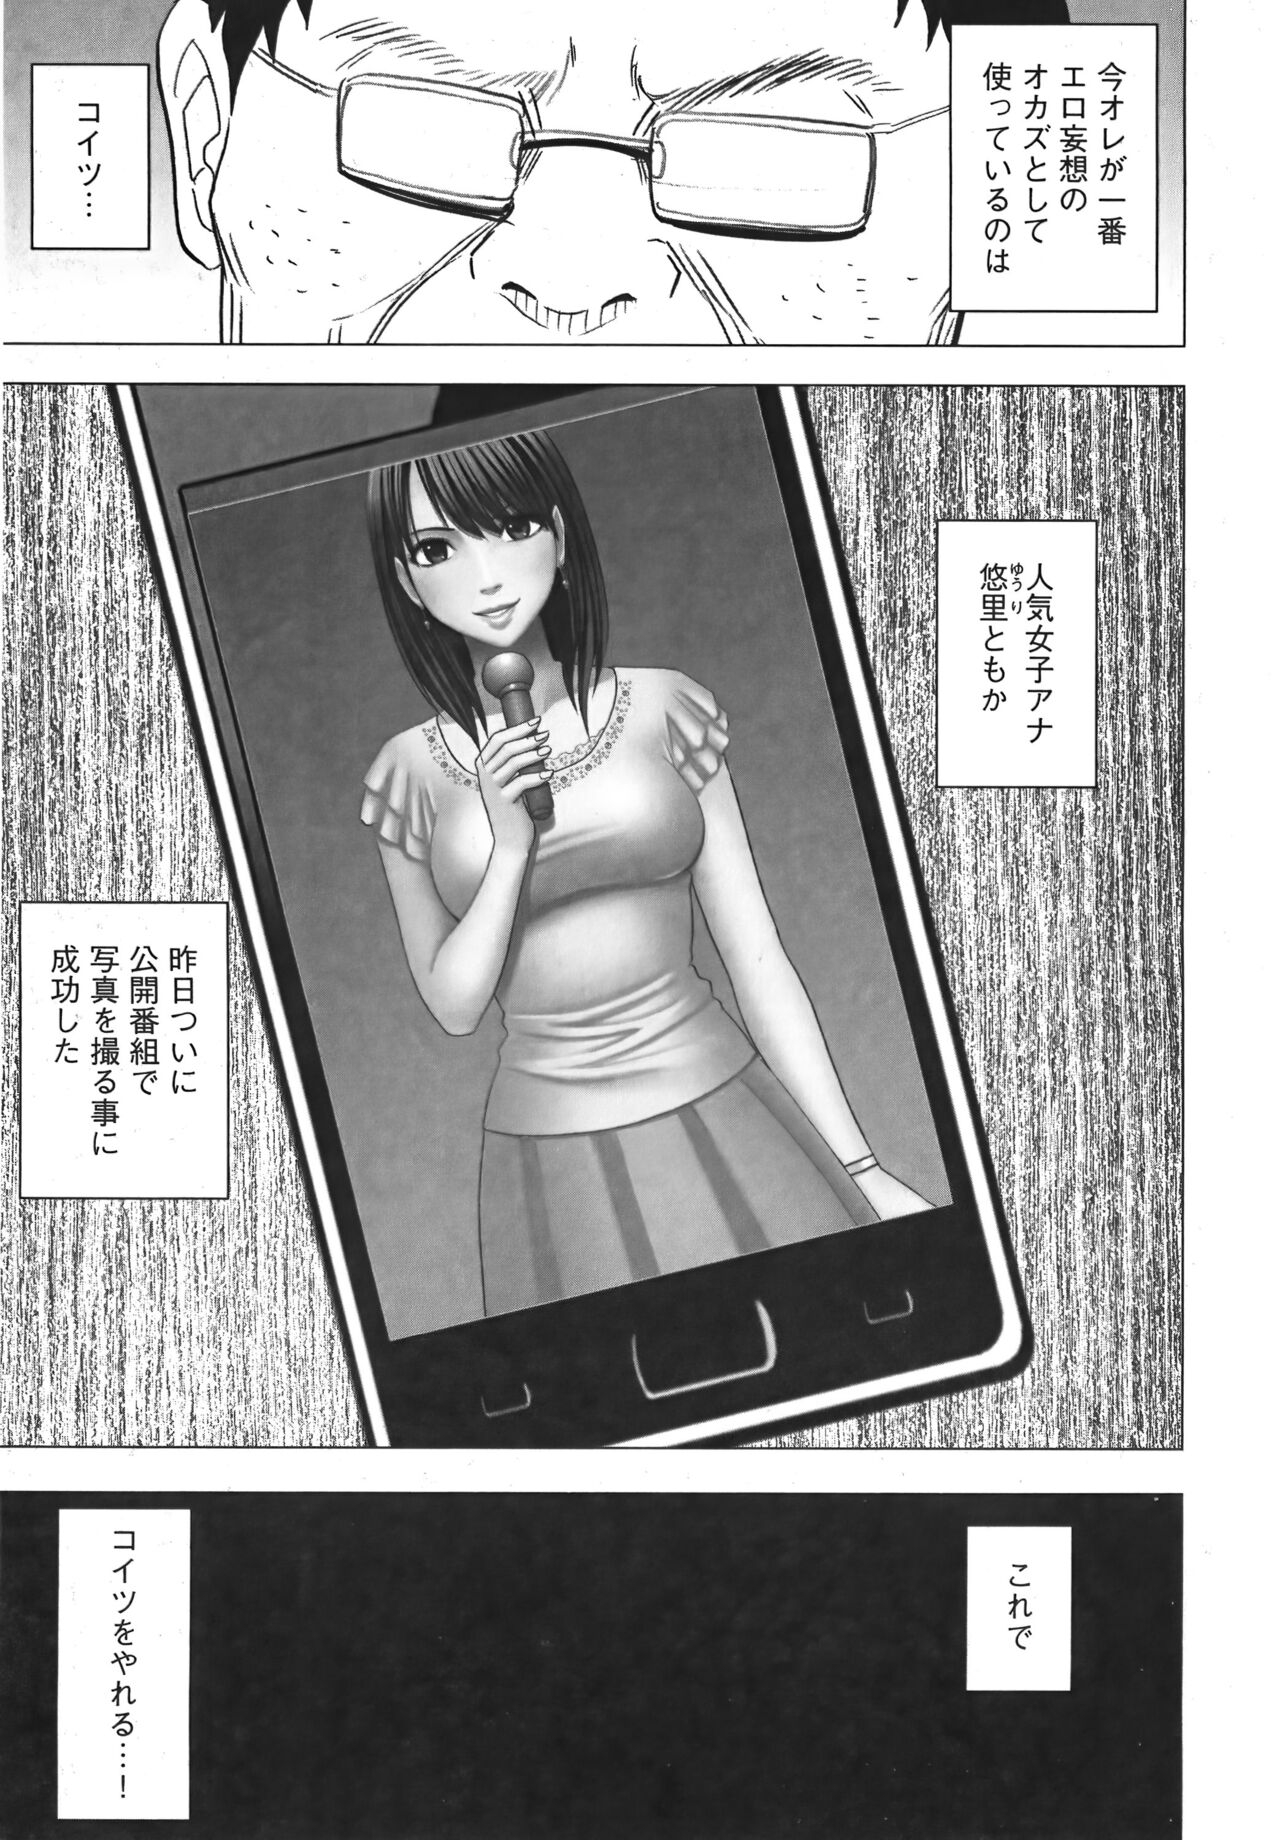 [Crimson] Idol Kyousei Sousa Vol.1 Smartphone de Meireishita Koto ga Genjitsu ni [Complete Edition] 90